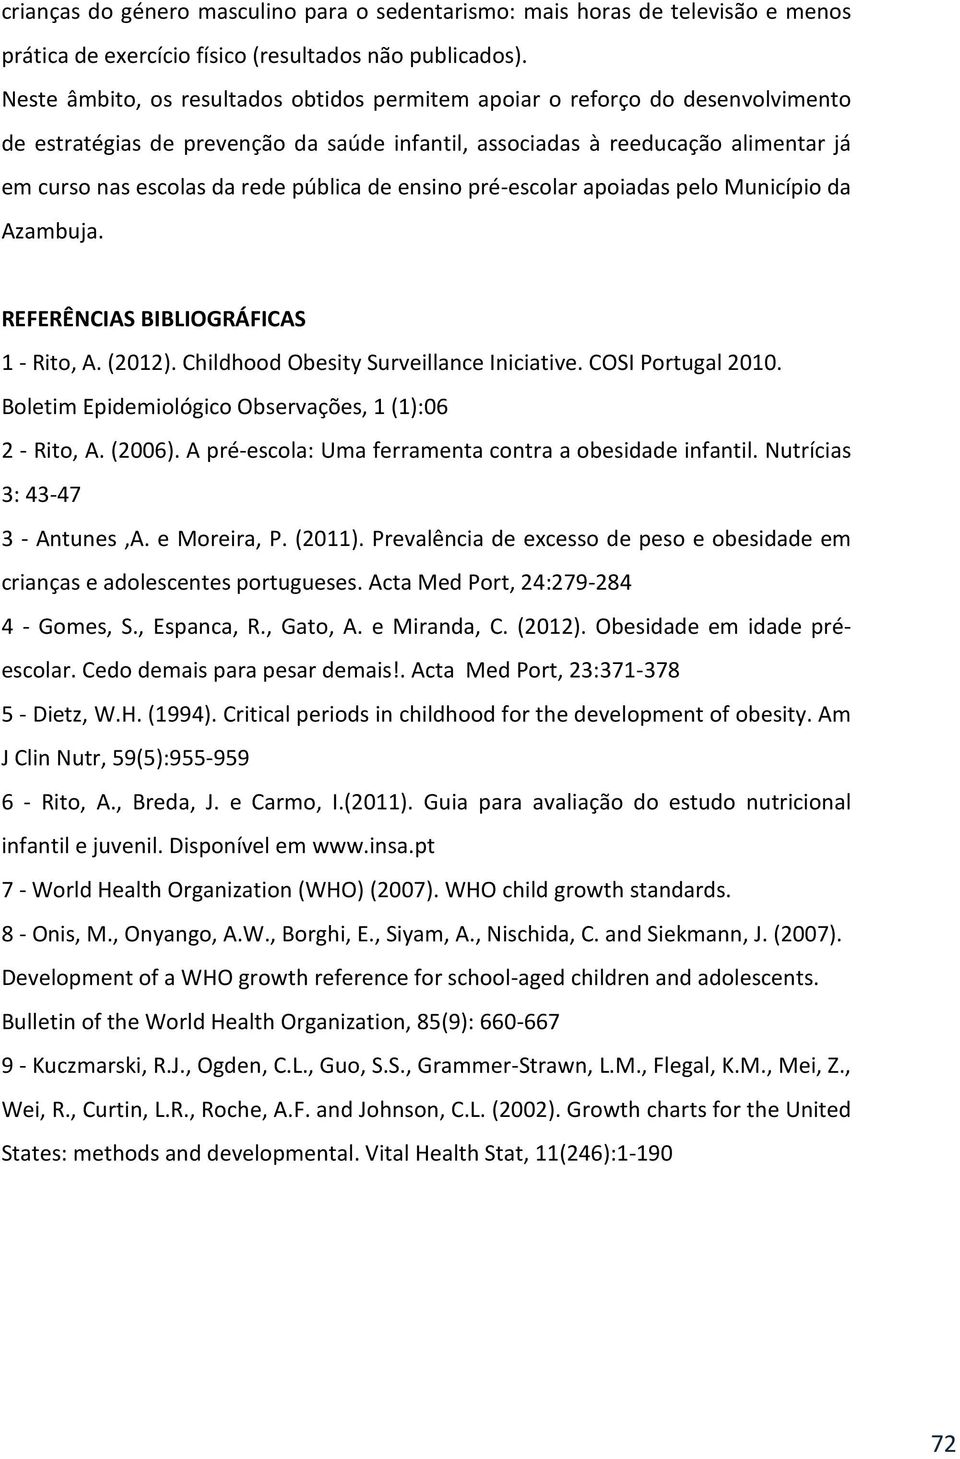 pública de ensino pré-escolar apoiadas pelo Município da Azambuja. REFERÊNCIAS BIBLIOGRÁFICAS 1 - Rito, A. (2012). Childhood Obesity Surveillance Iniciative. COSI Portugal 2010.